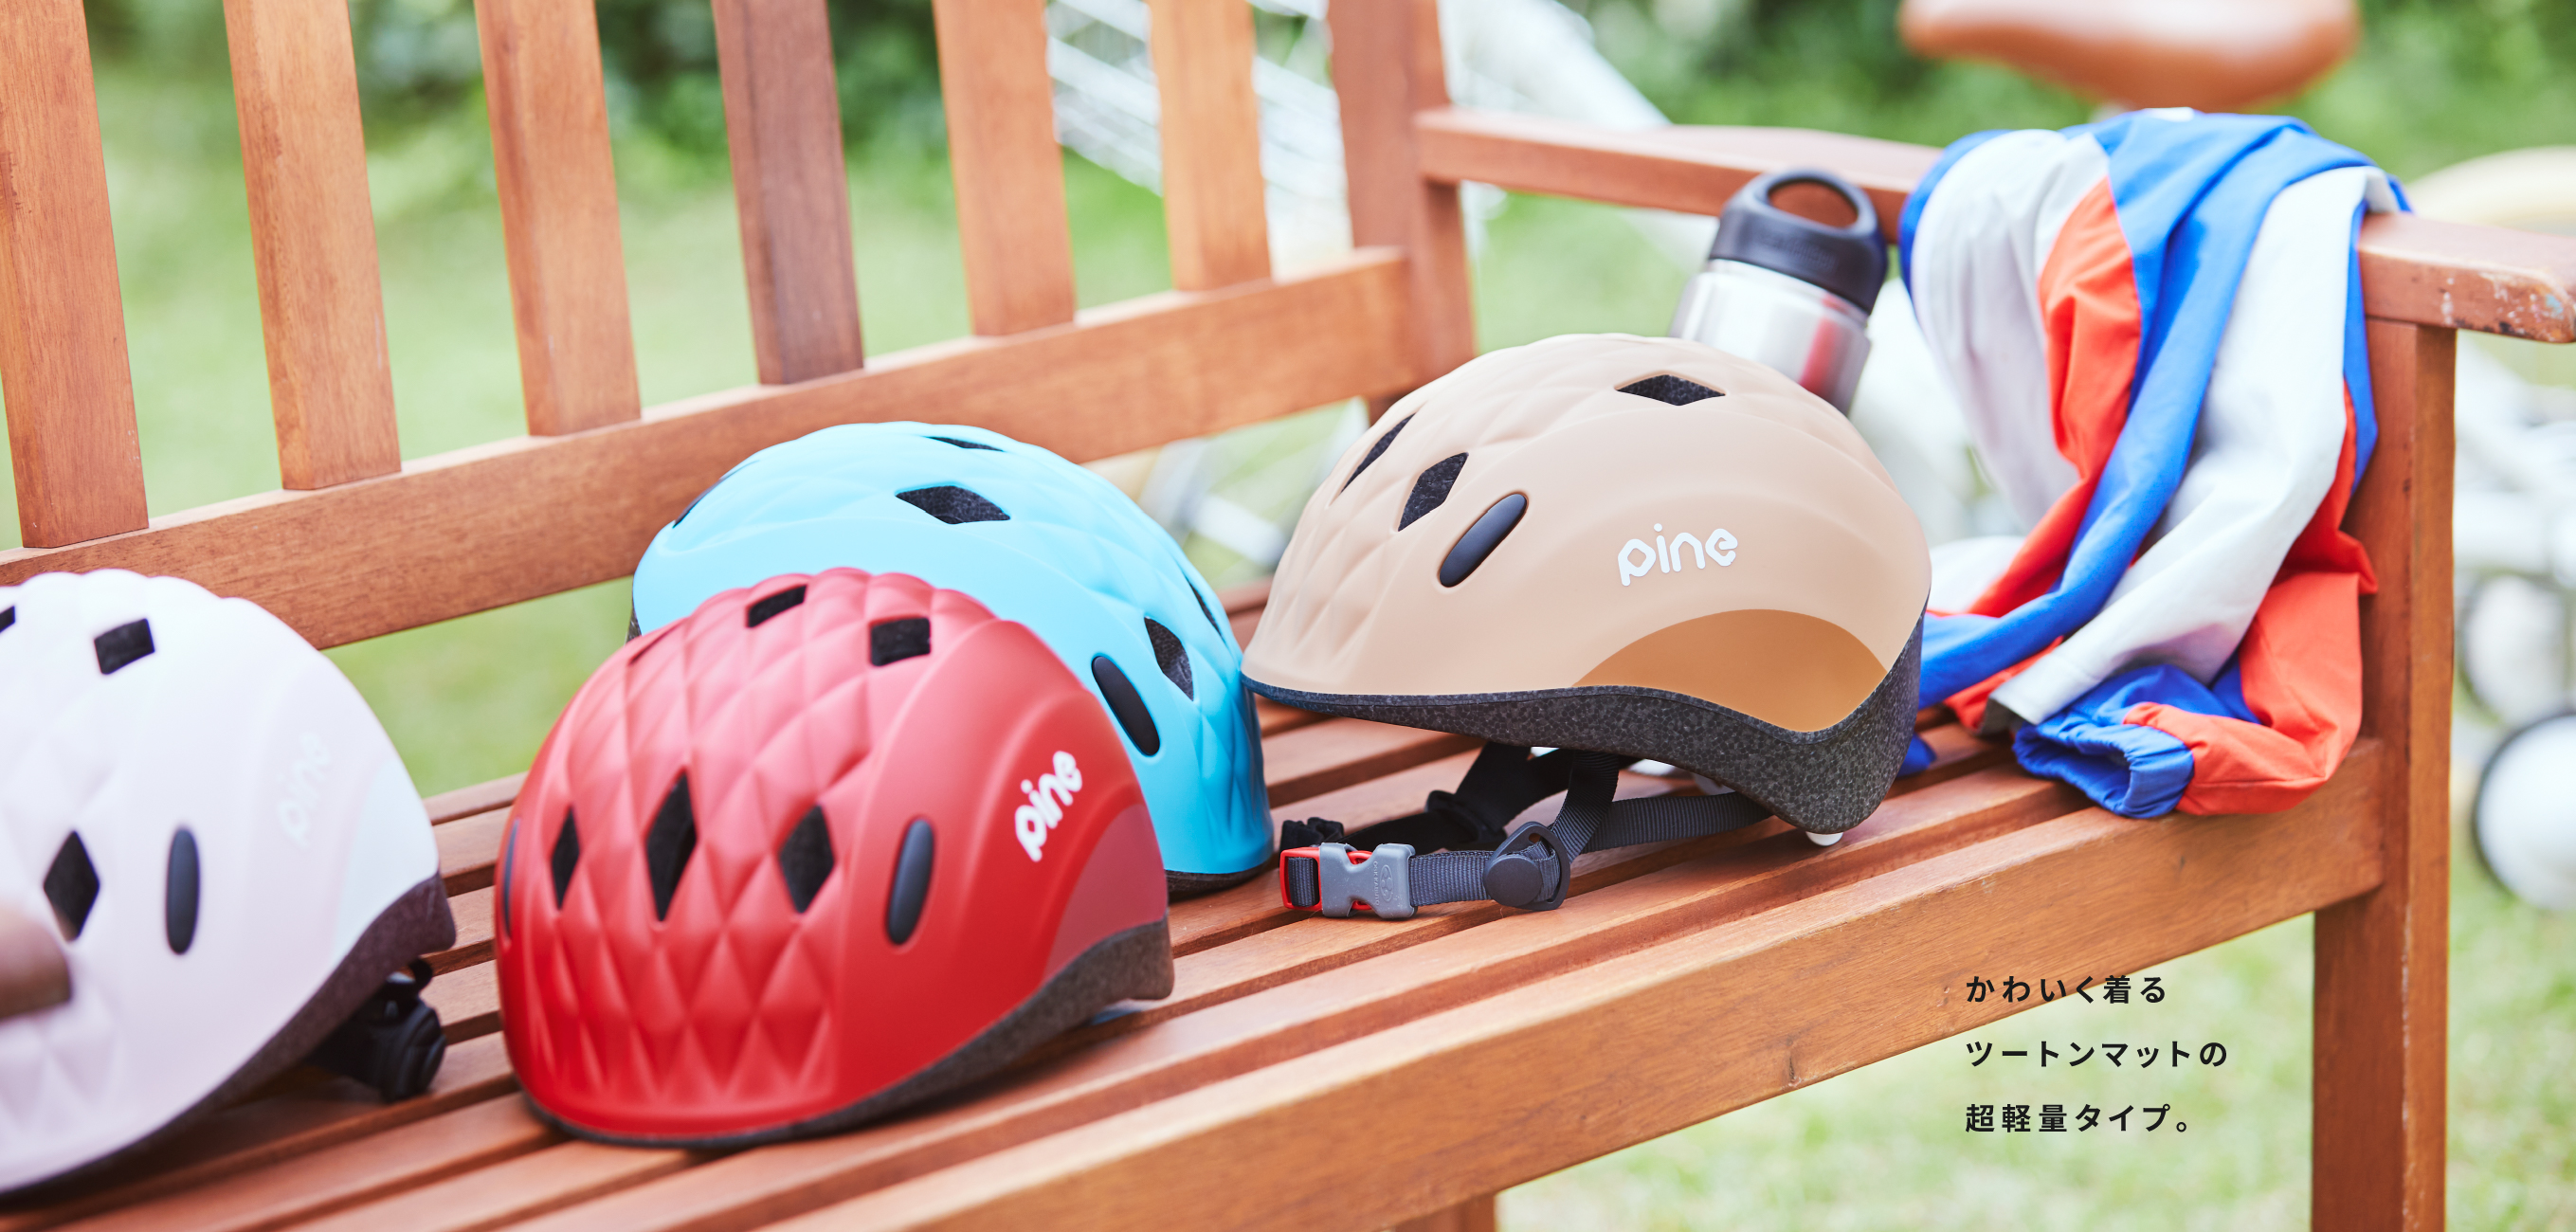 子供用ヘルメット PINE パイン ソフトシェル インモールド かわいく着るツートンマットの超軽量タイプ。